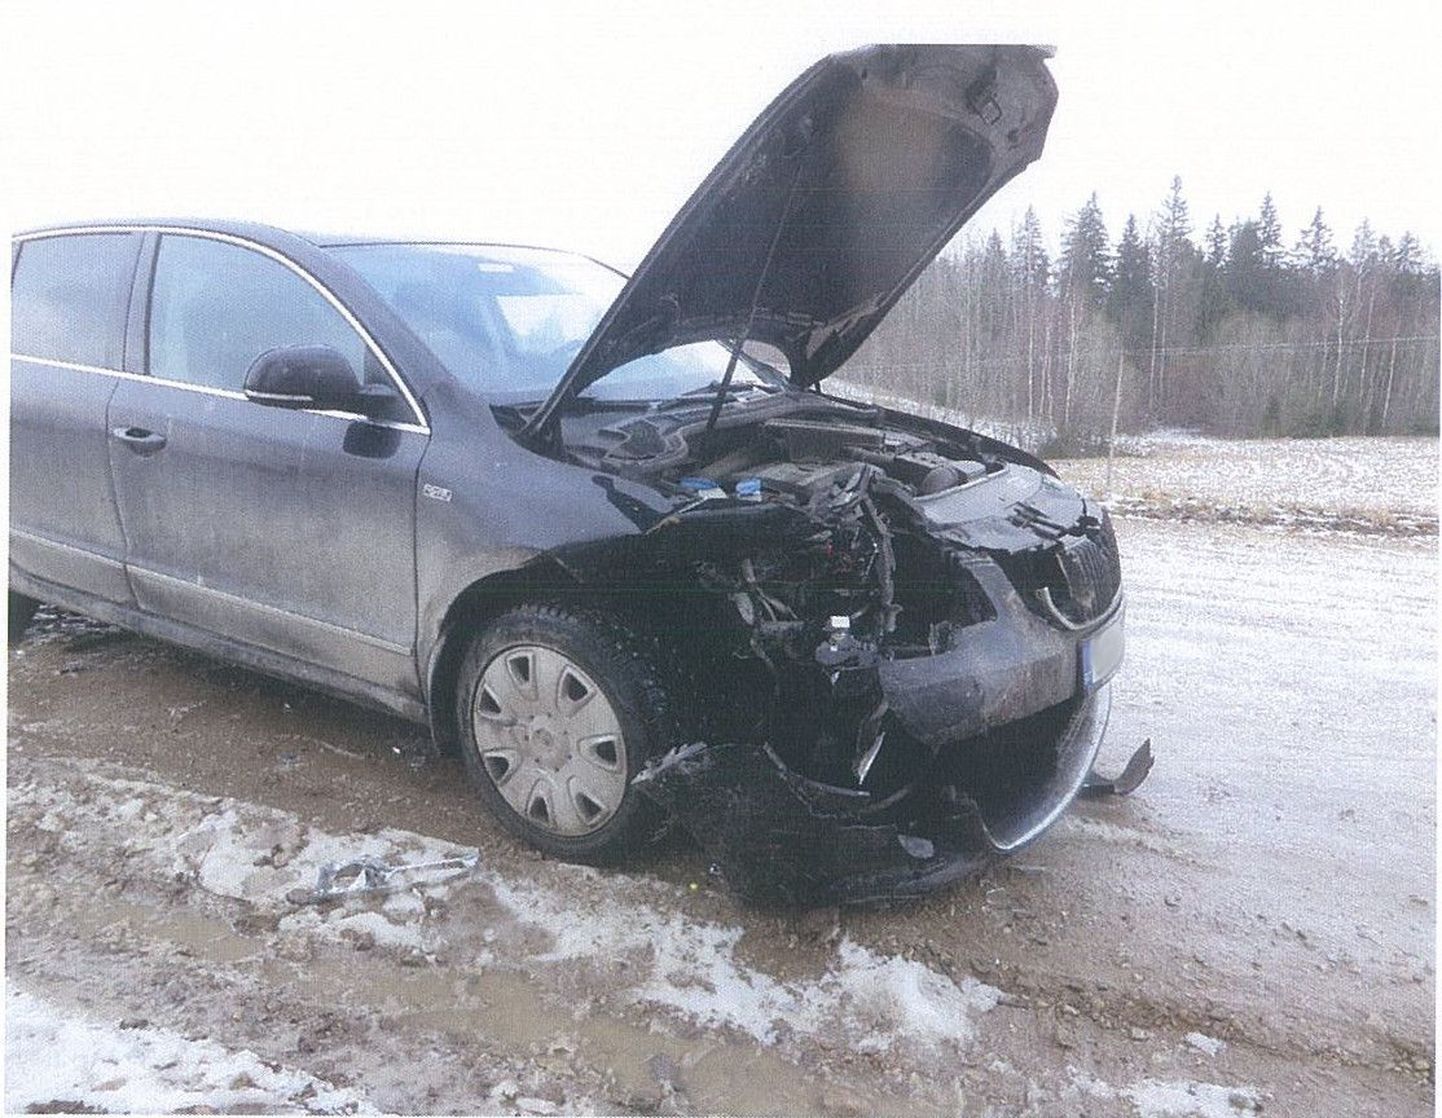 Liiklusõnnetus Otepää vallas Kannistiku-Koolitare tee esimesel kilomeetril.